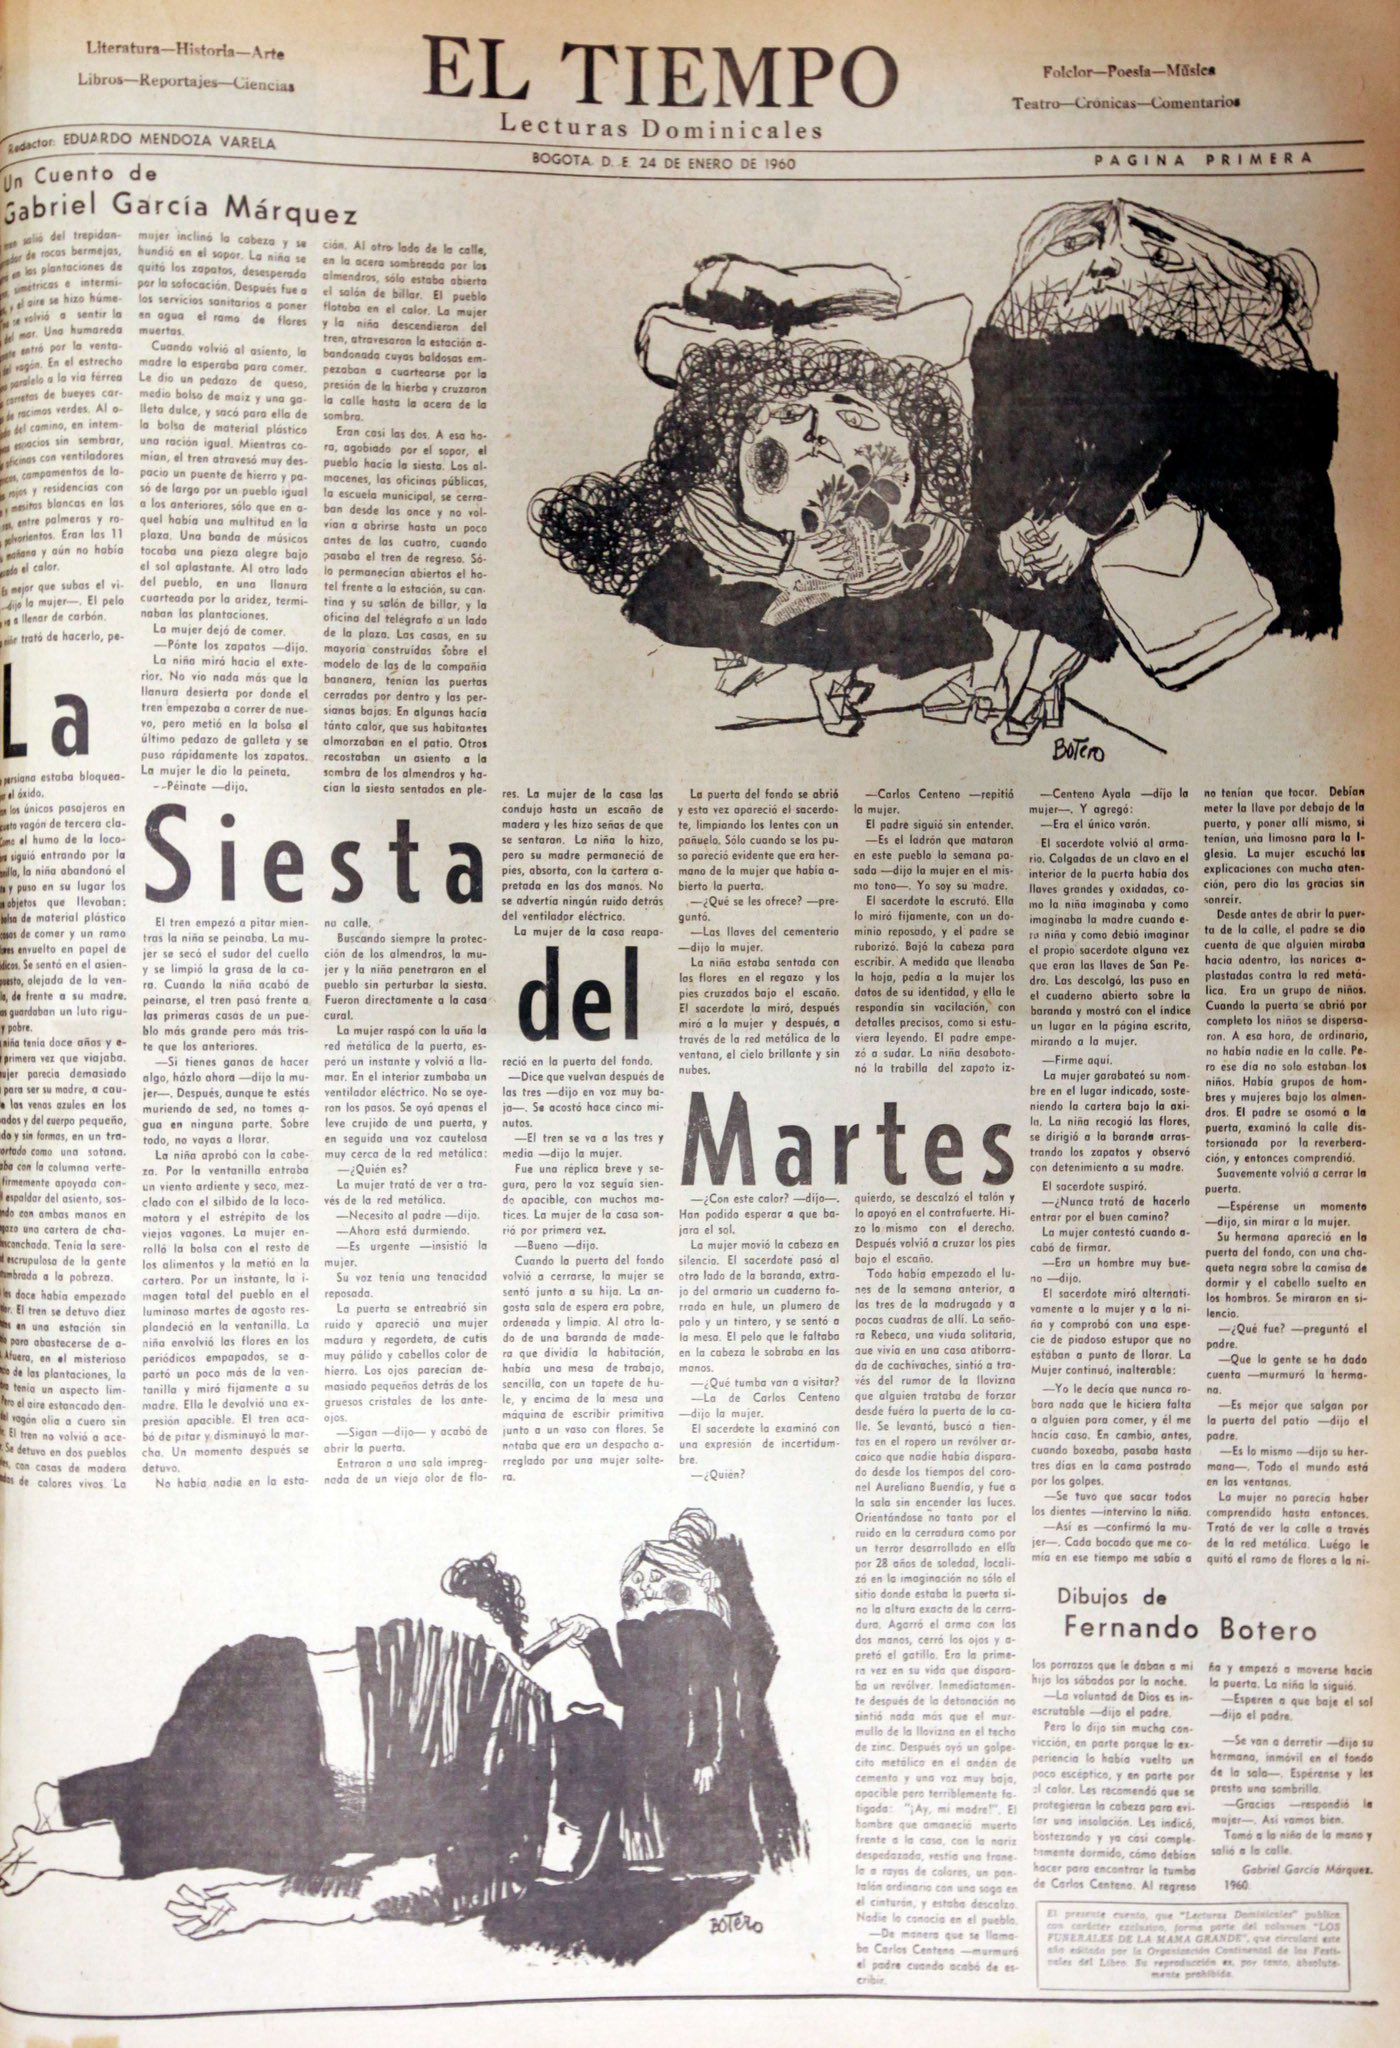 Imagen del cuento de Gabriel García Márquez publicado por El Tiempo en 1960, con las ilustraciones de Fernando Botero.